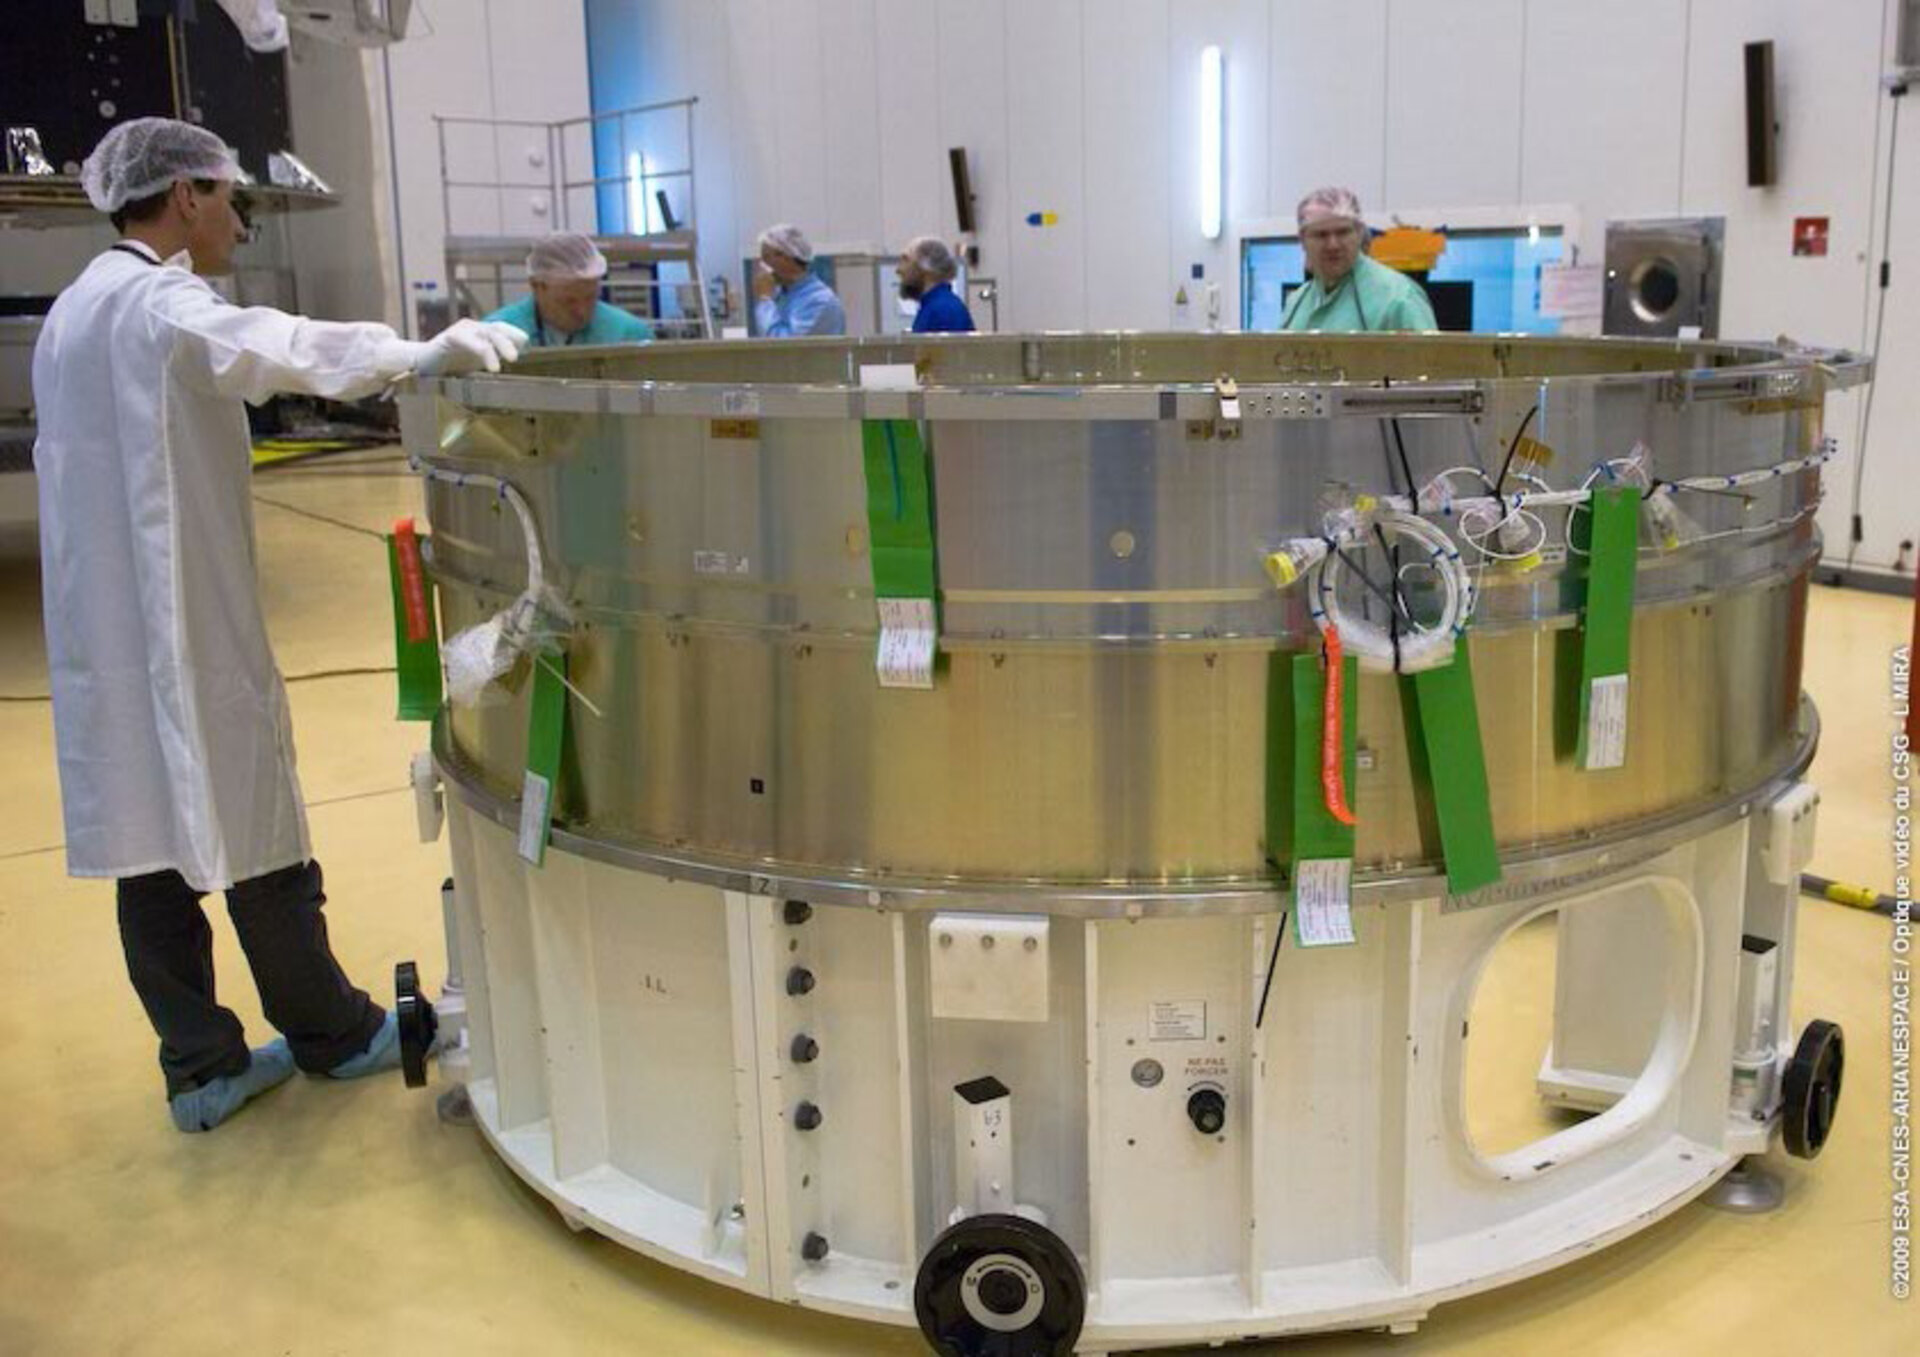 Planck's Ariane 5 adapter